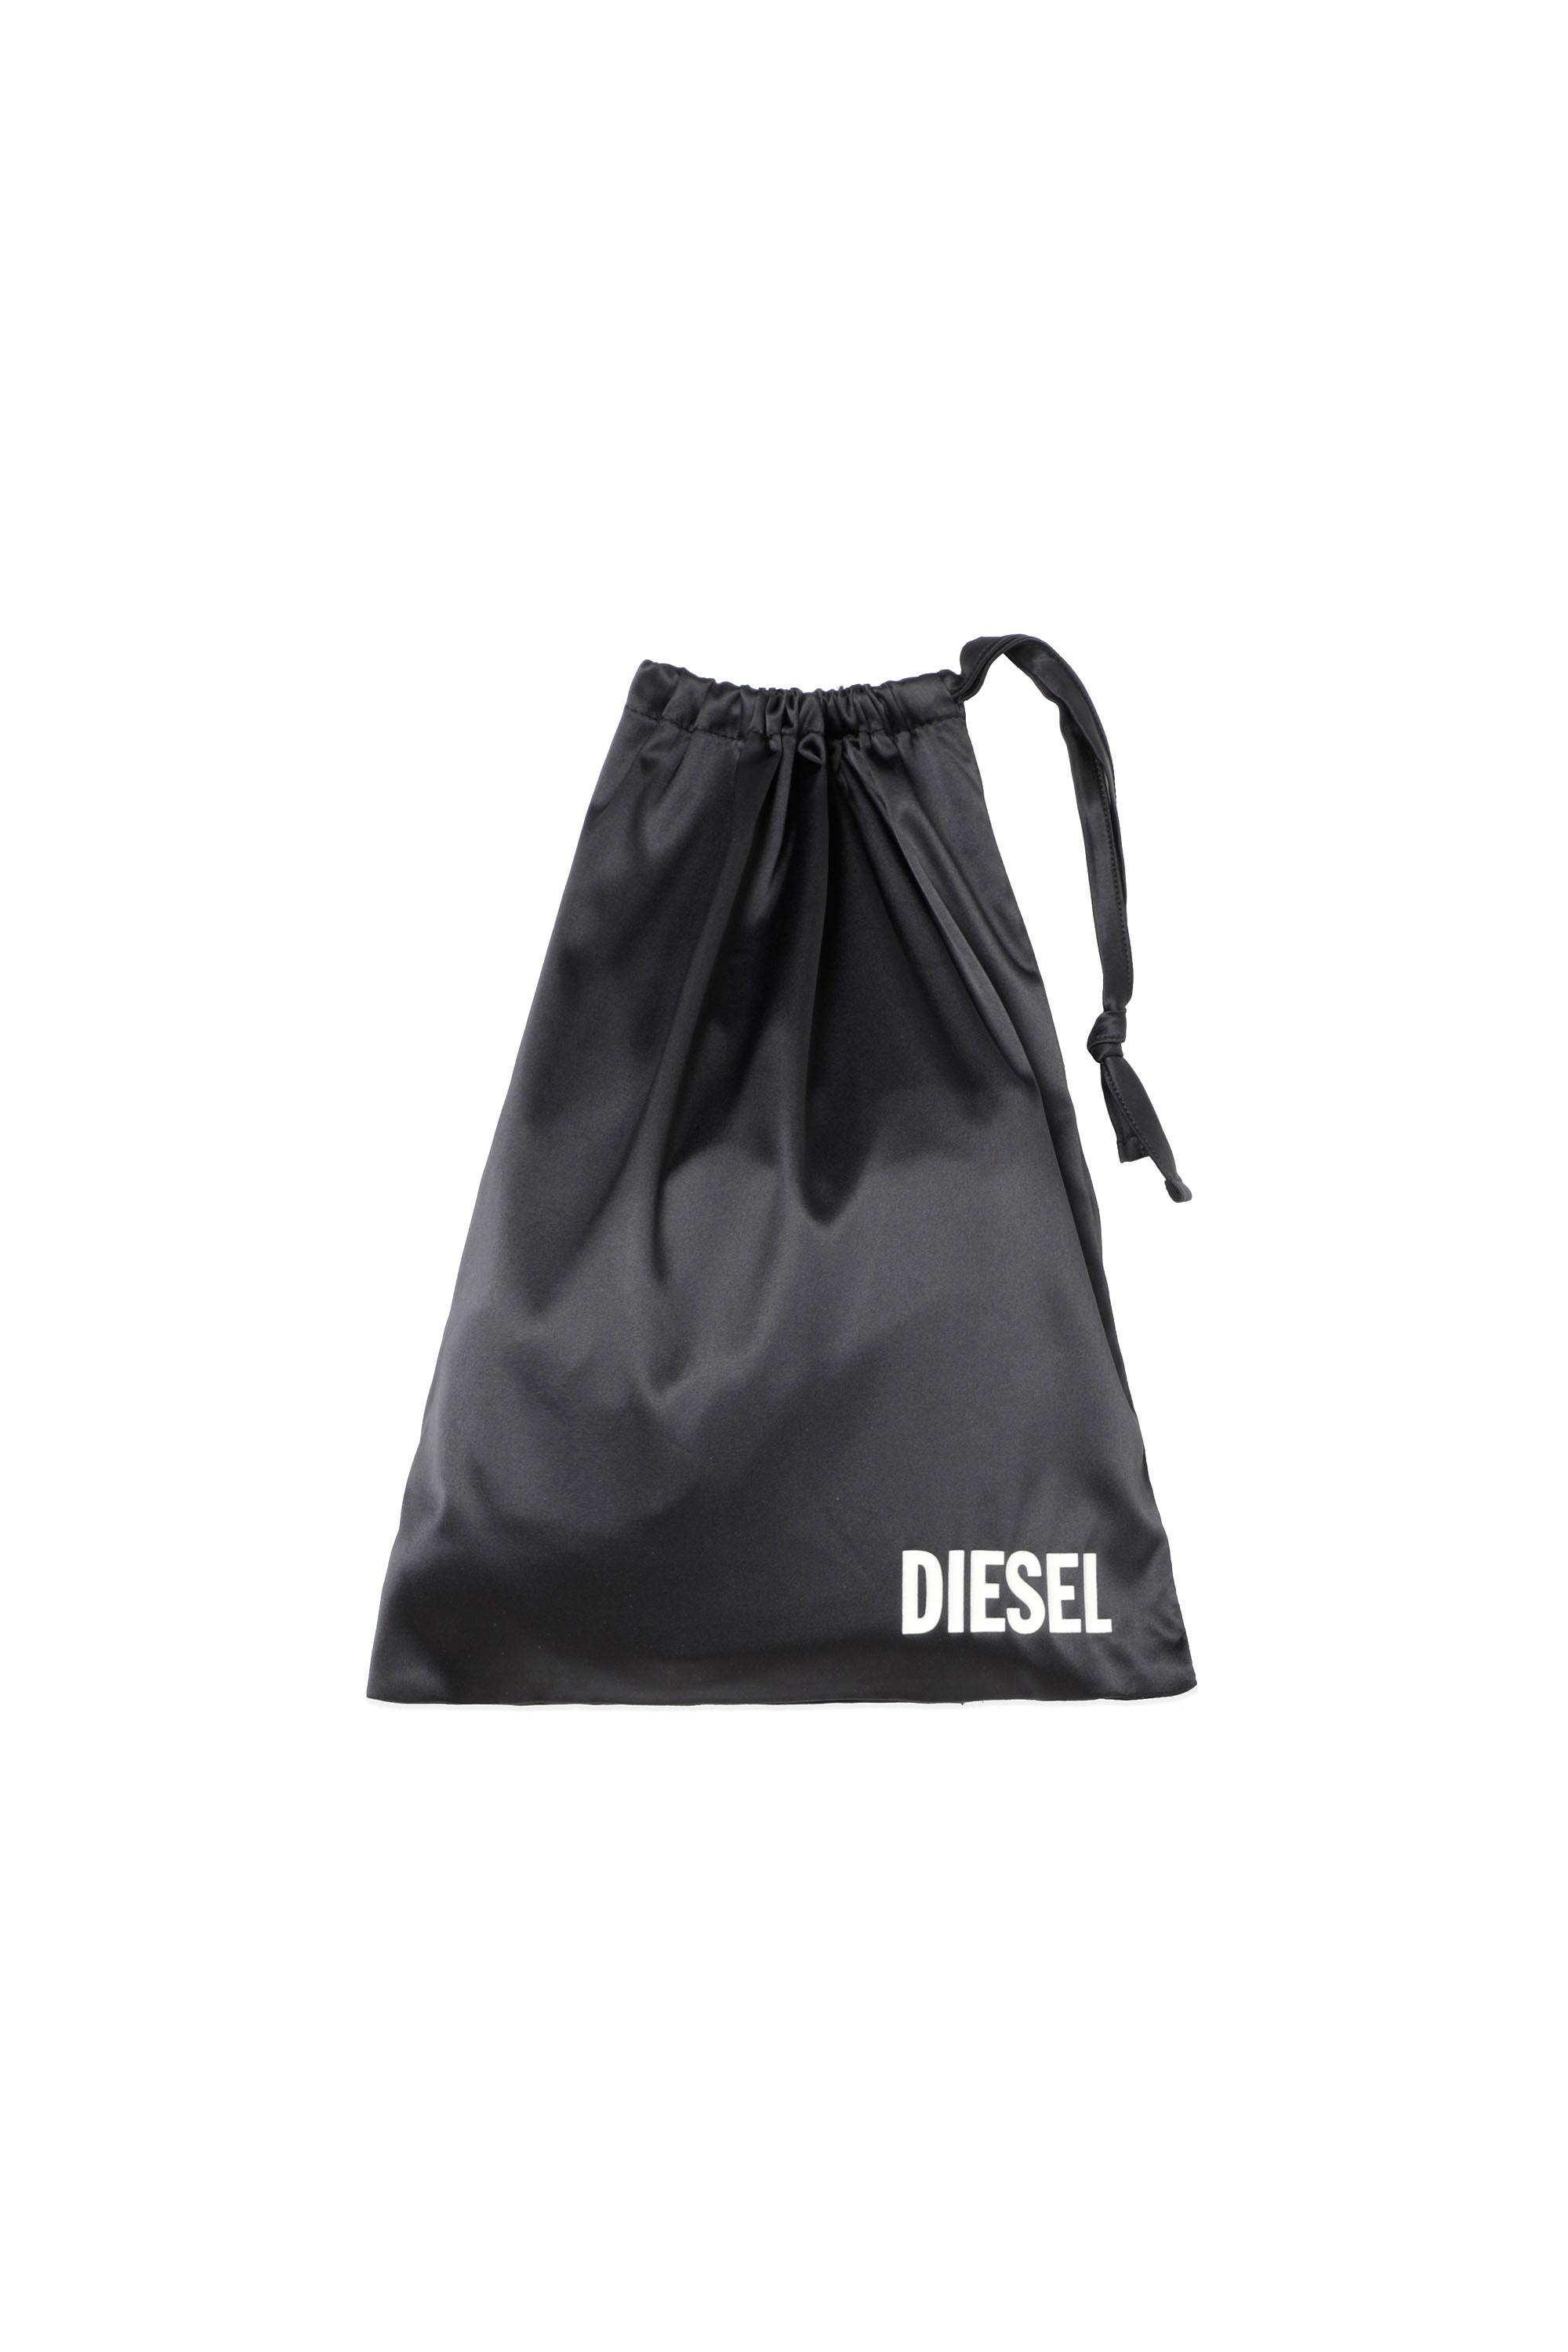 Diesel - UFSET-TANSH-SAT,  - Image 6